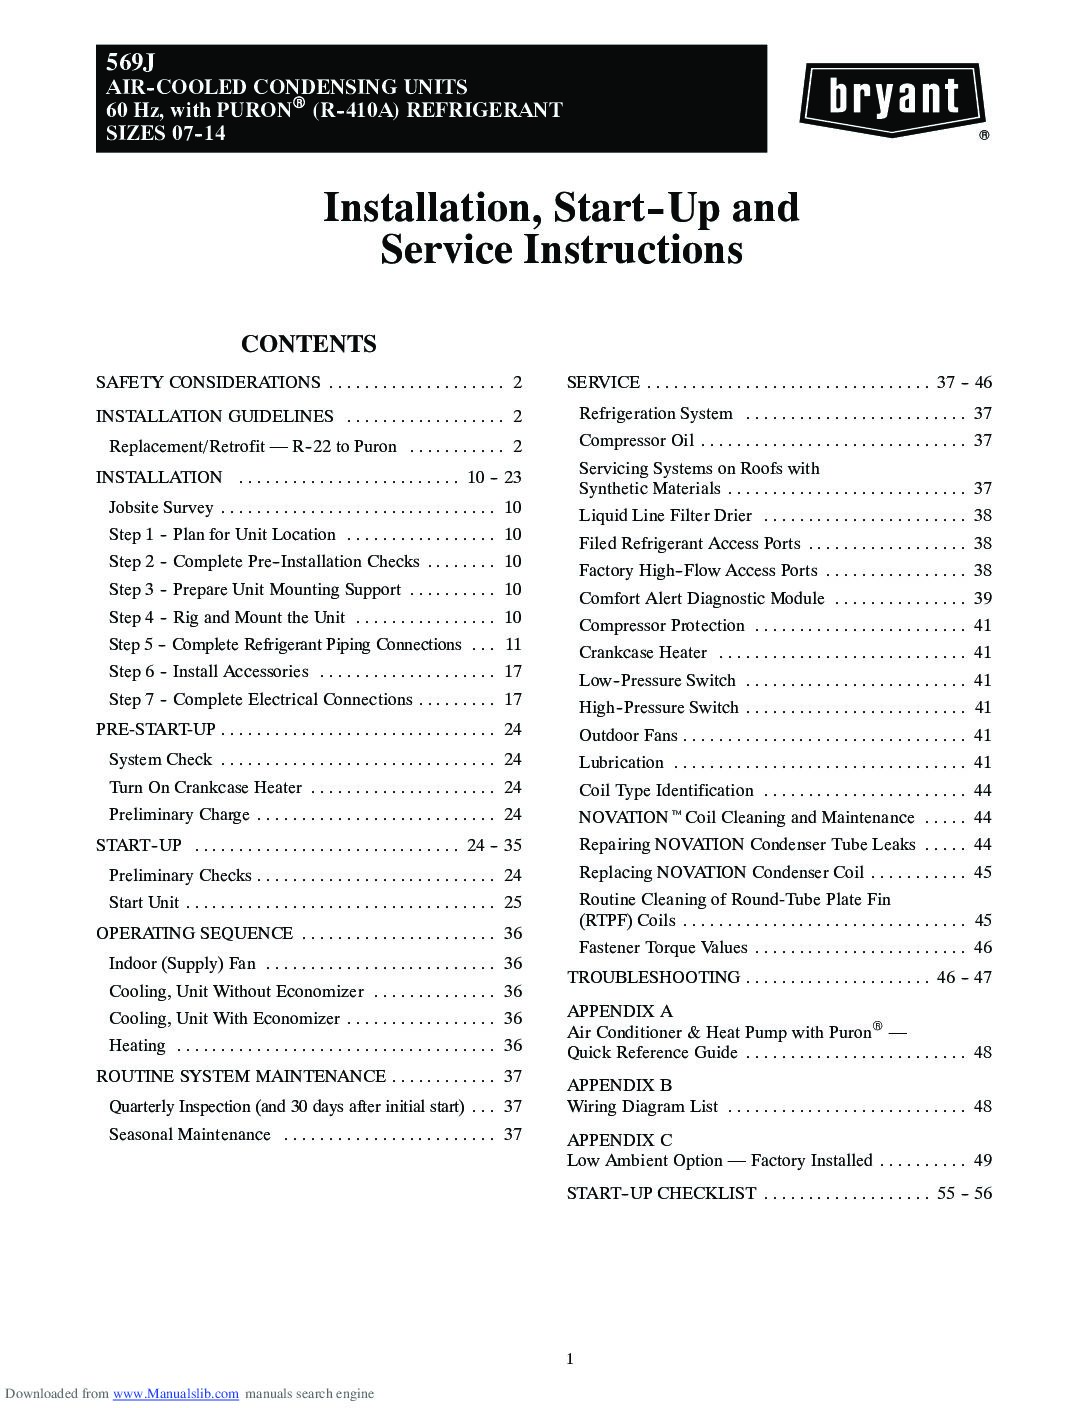 569j - Manual de Instalacion, arranque y servicio